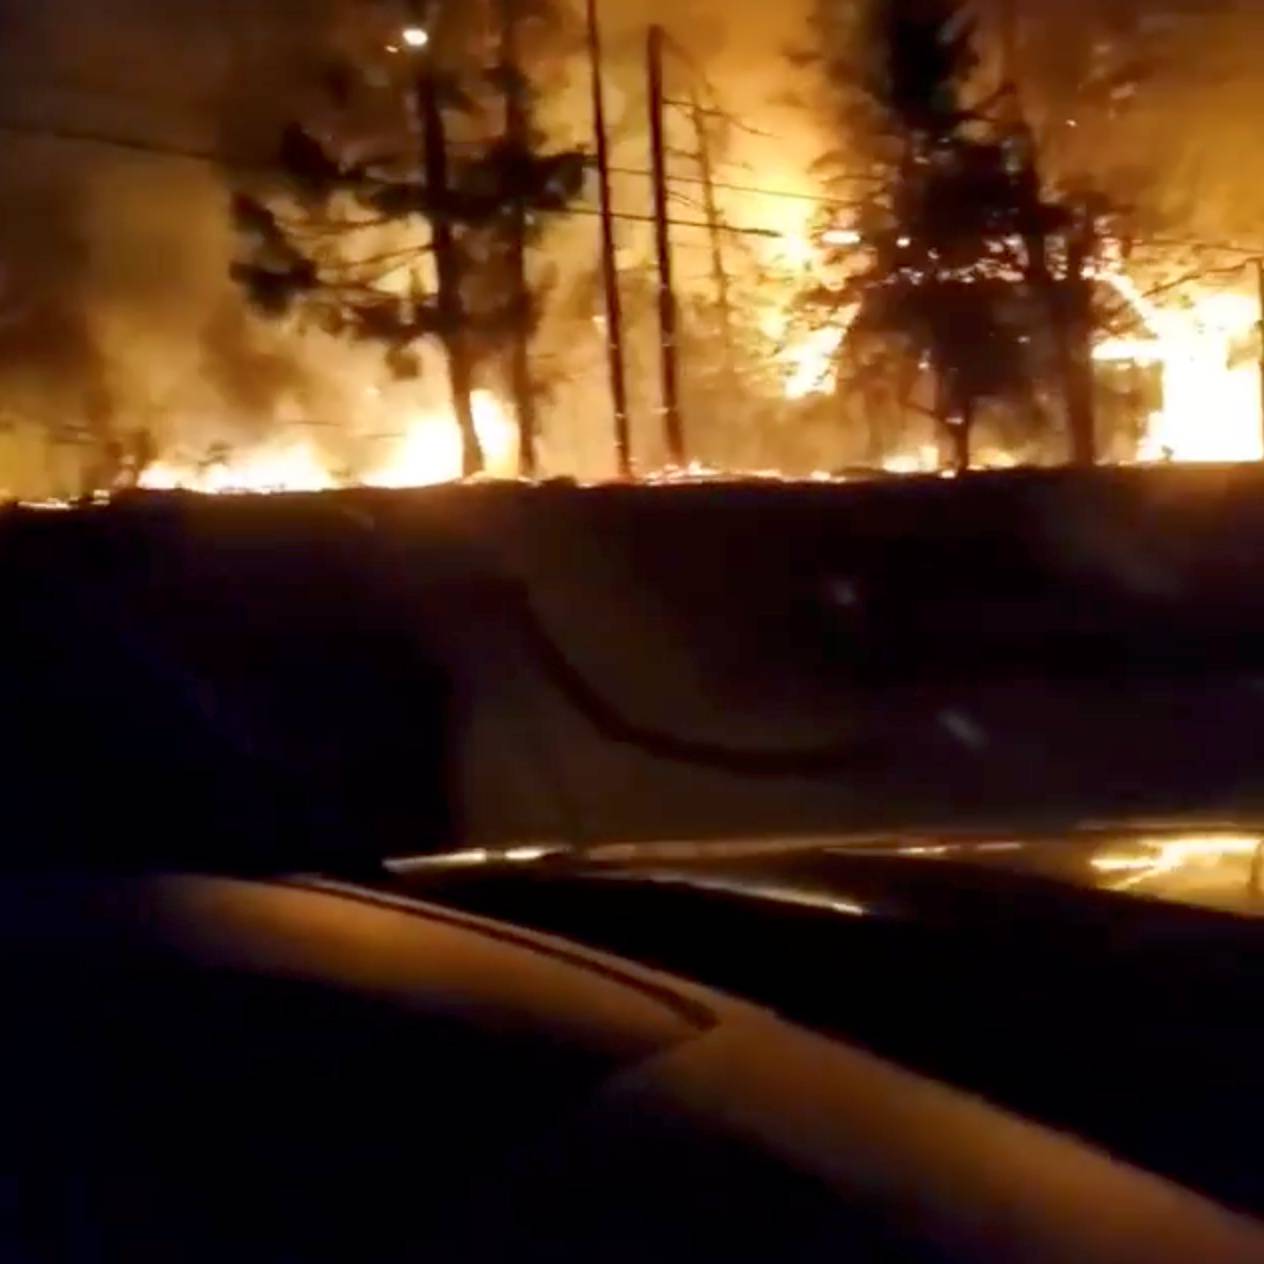 Vegetation is seen on fire along a side road in Molalla, Oregon